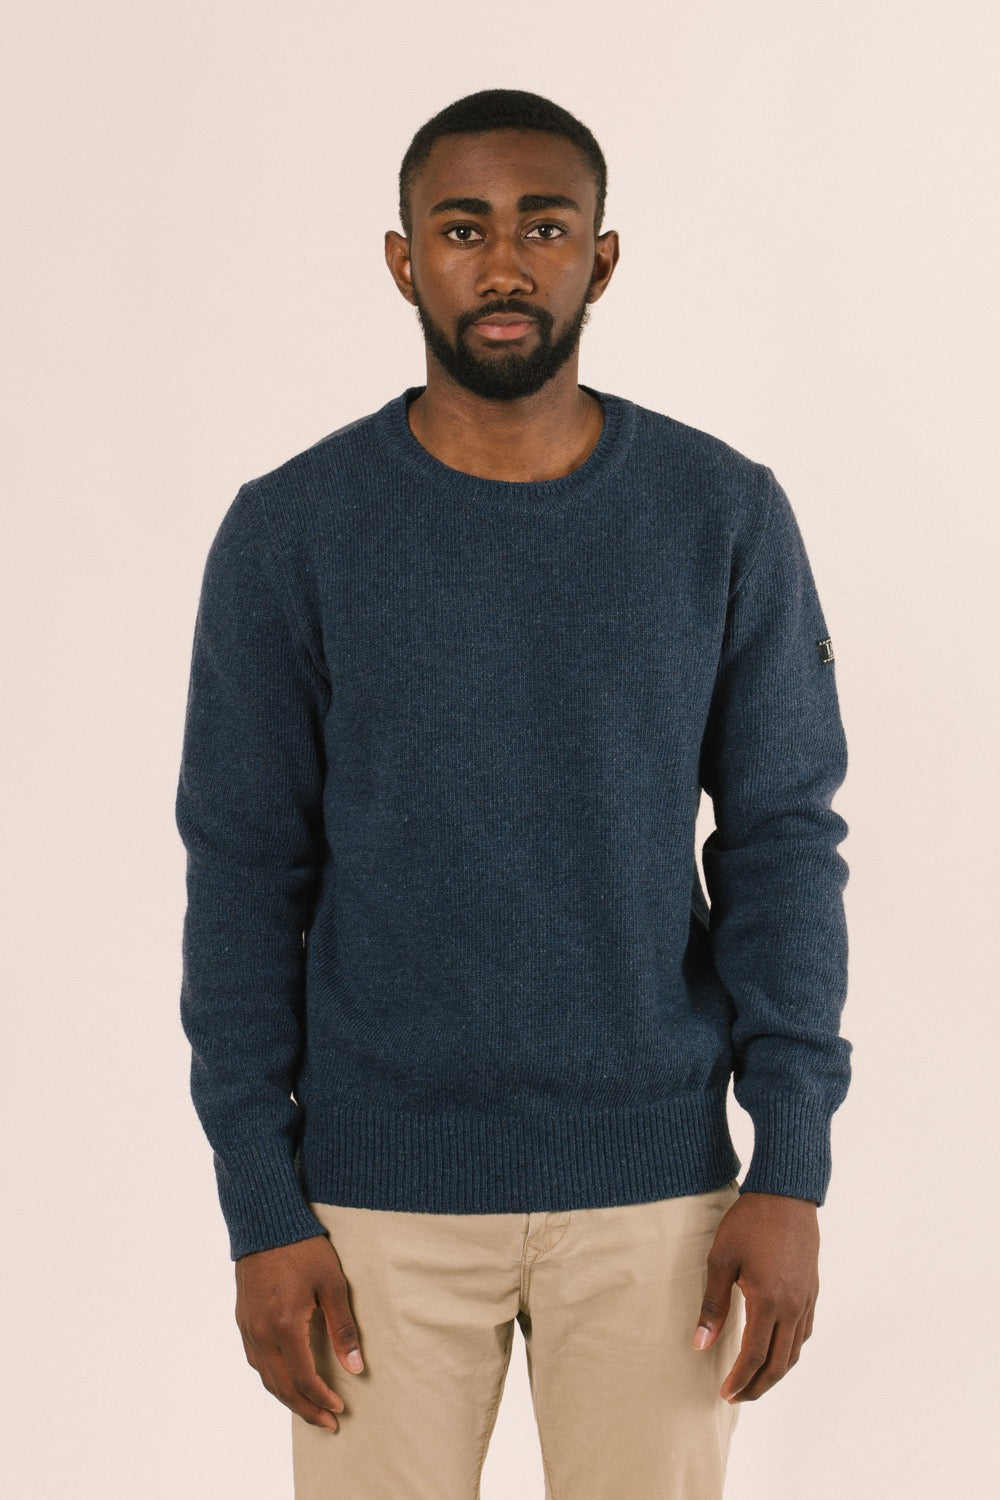 Model de front amb el jersei. La forma del mateix és la més bàsica.